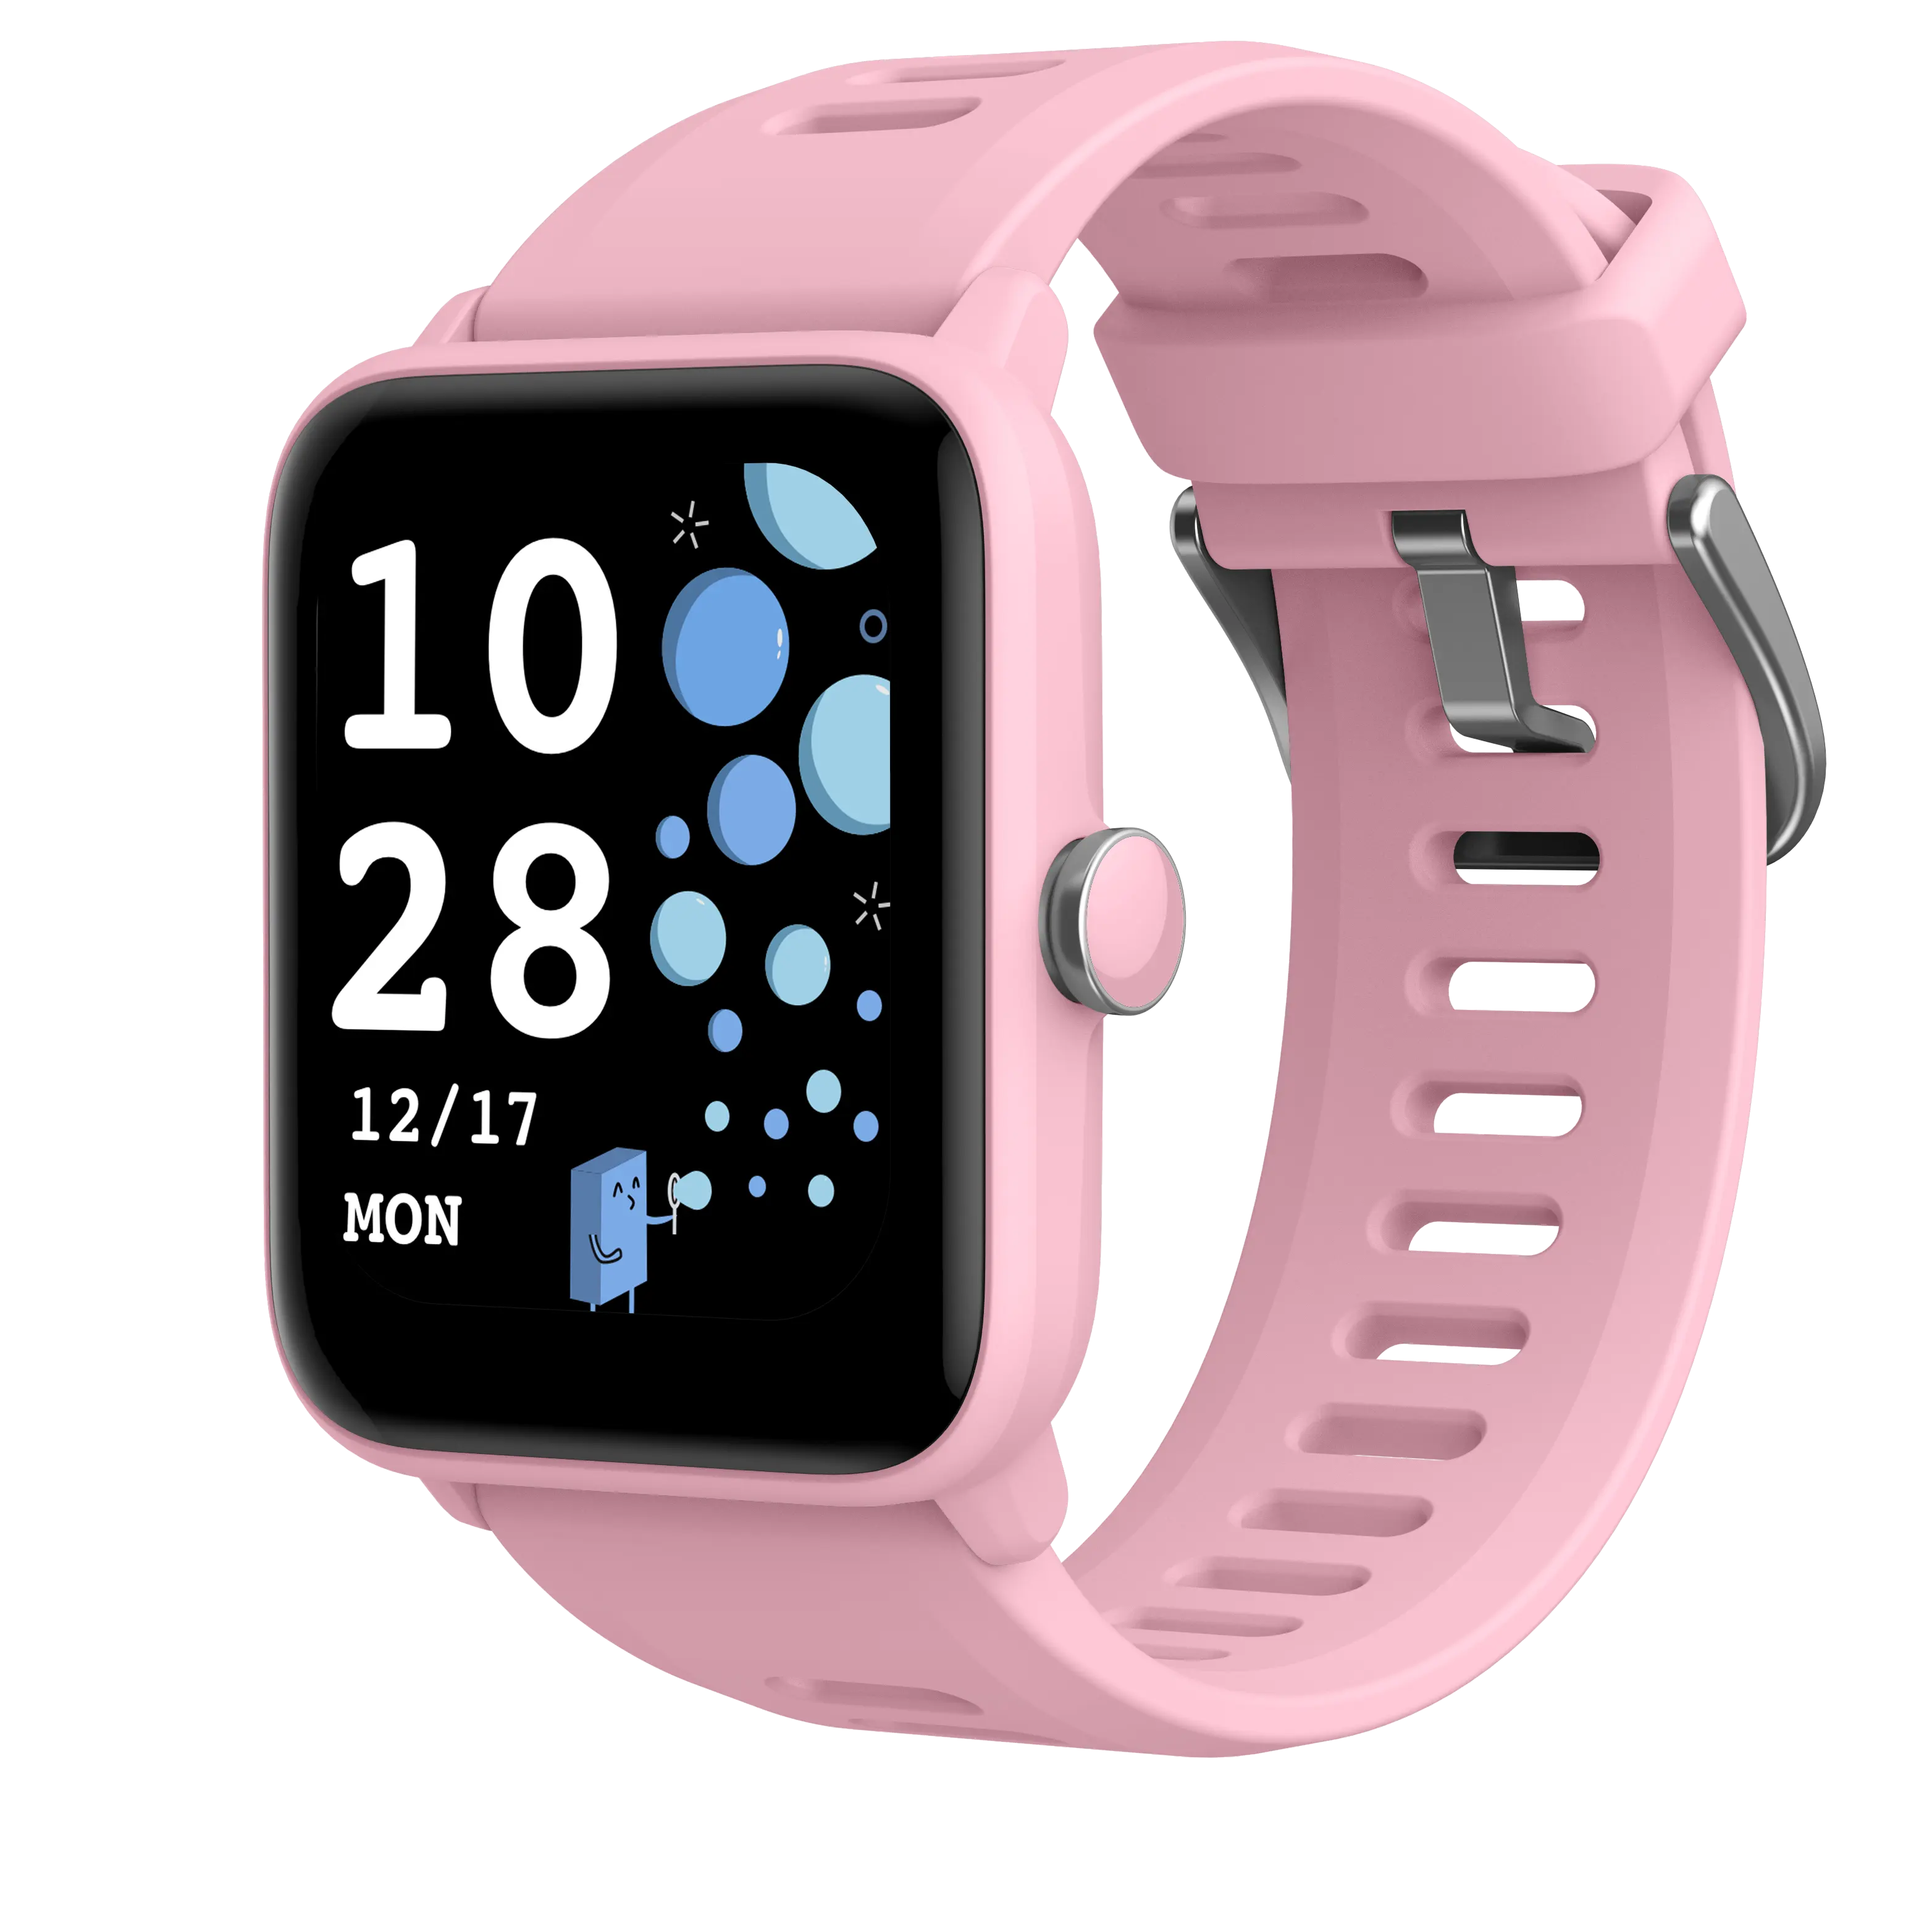 BIGGERFIVE jam tangan cerdas merah muda untuk anak-anak dengan permainan, layar warna, efek Foto & lainnya, untuk bayi berusia 4, 5, 6, 7 + tahun,